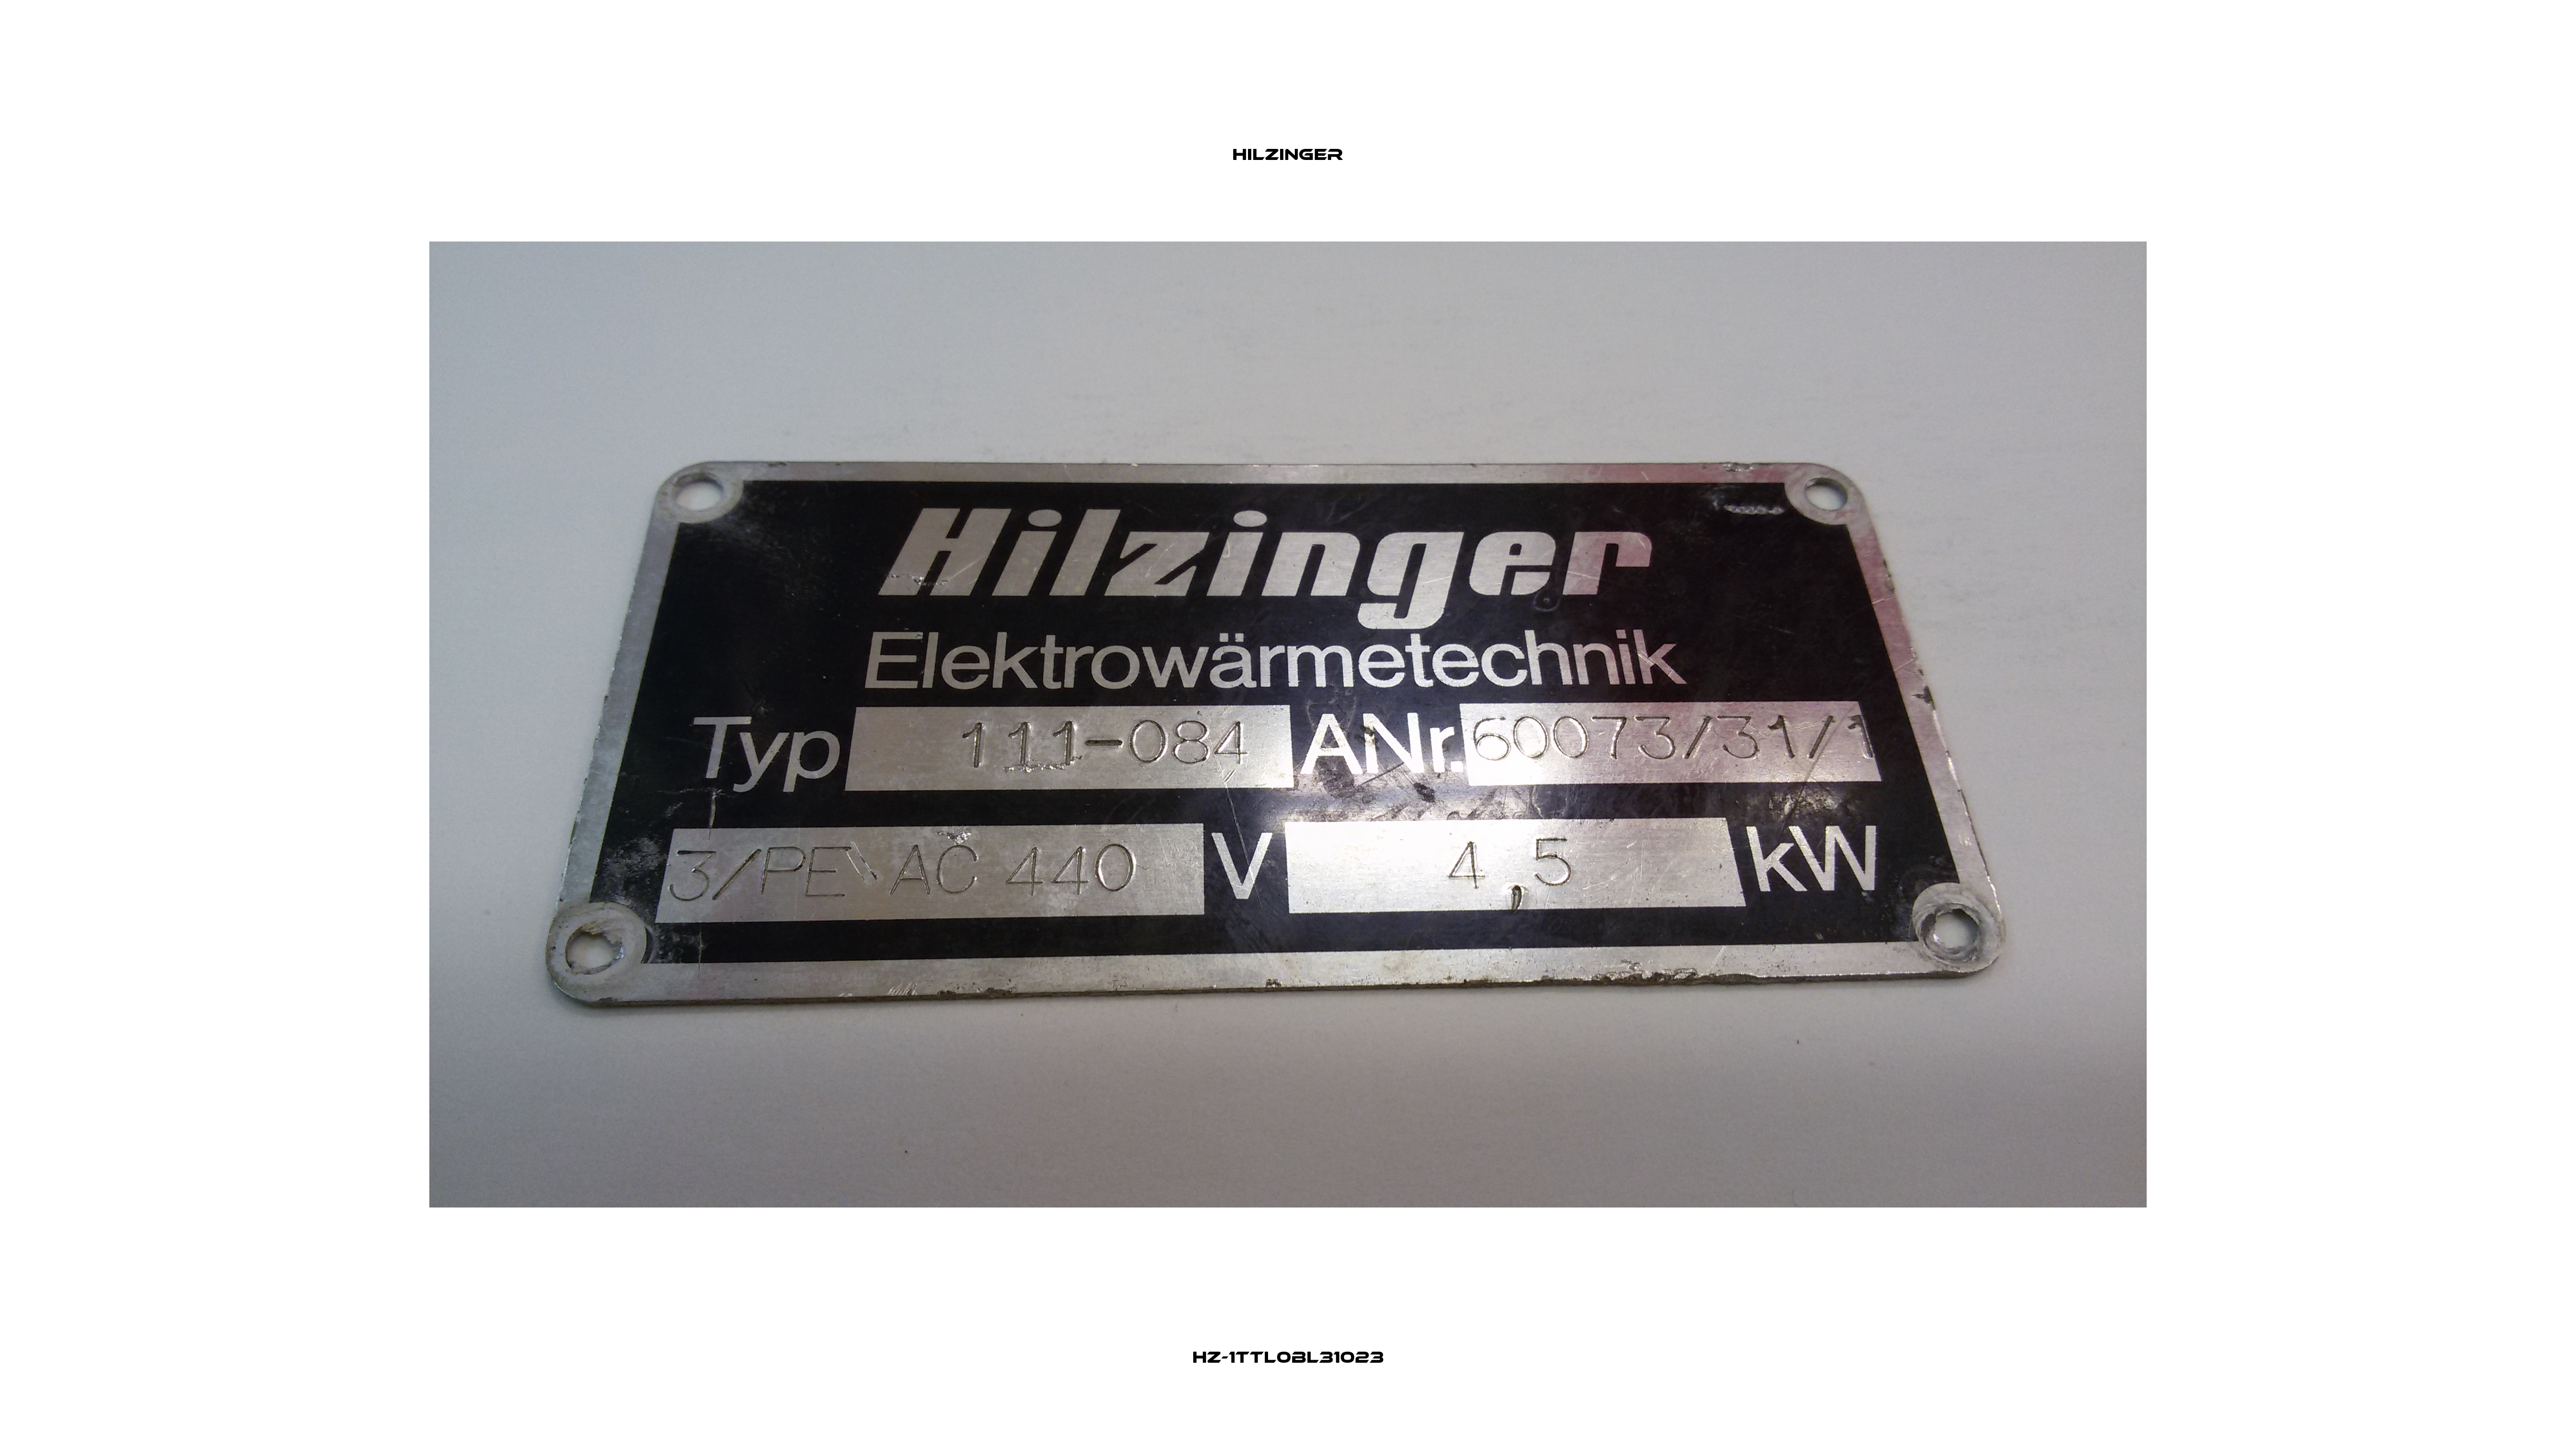 HZ-1TTL0BL31023 Hilzinger